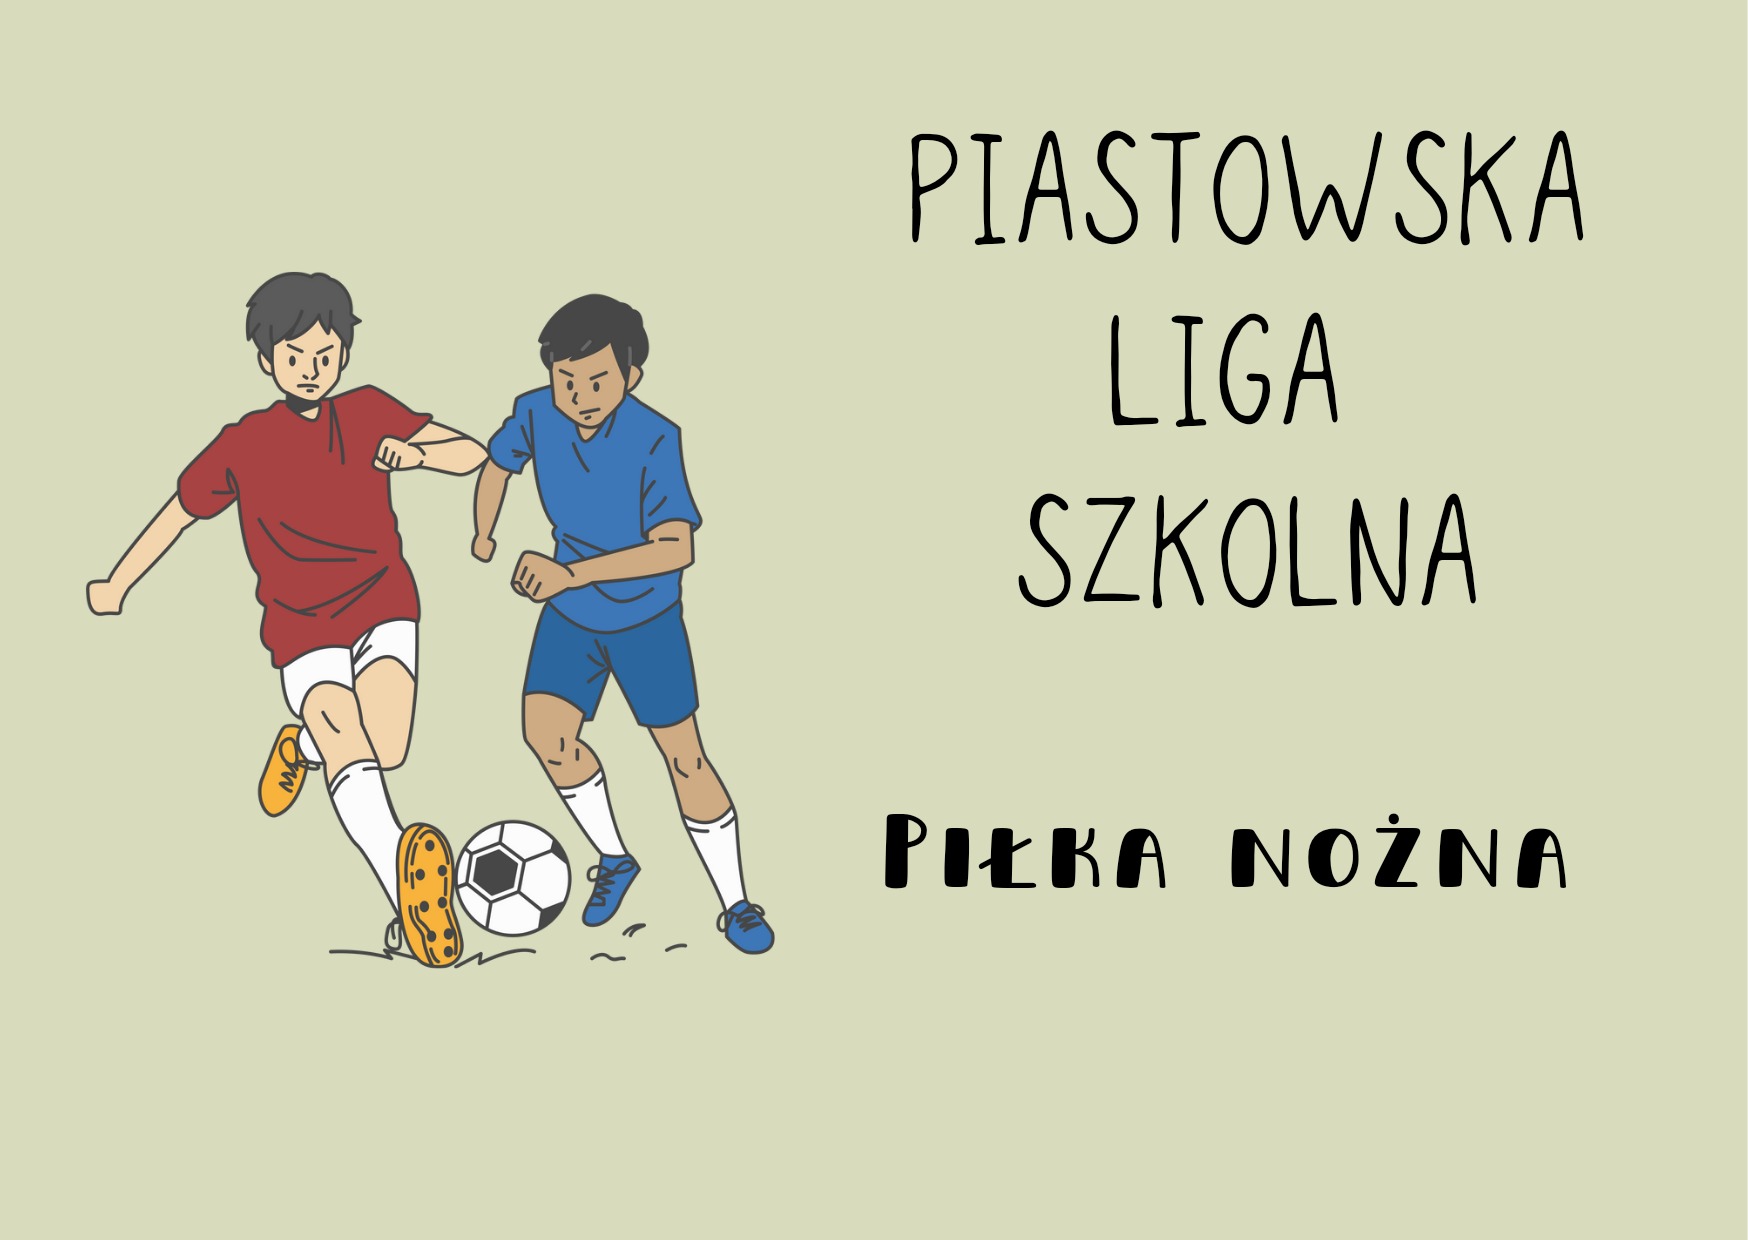 Piastowska Liga Szkolna - piłka nożna  - Obrazek 1